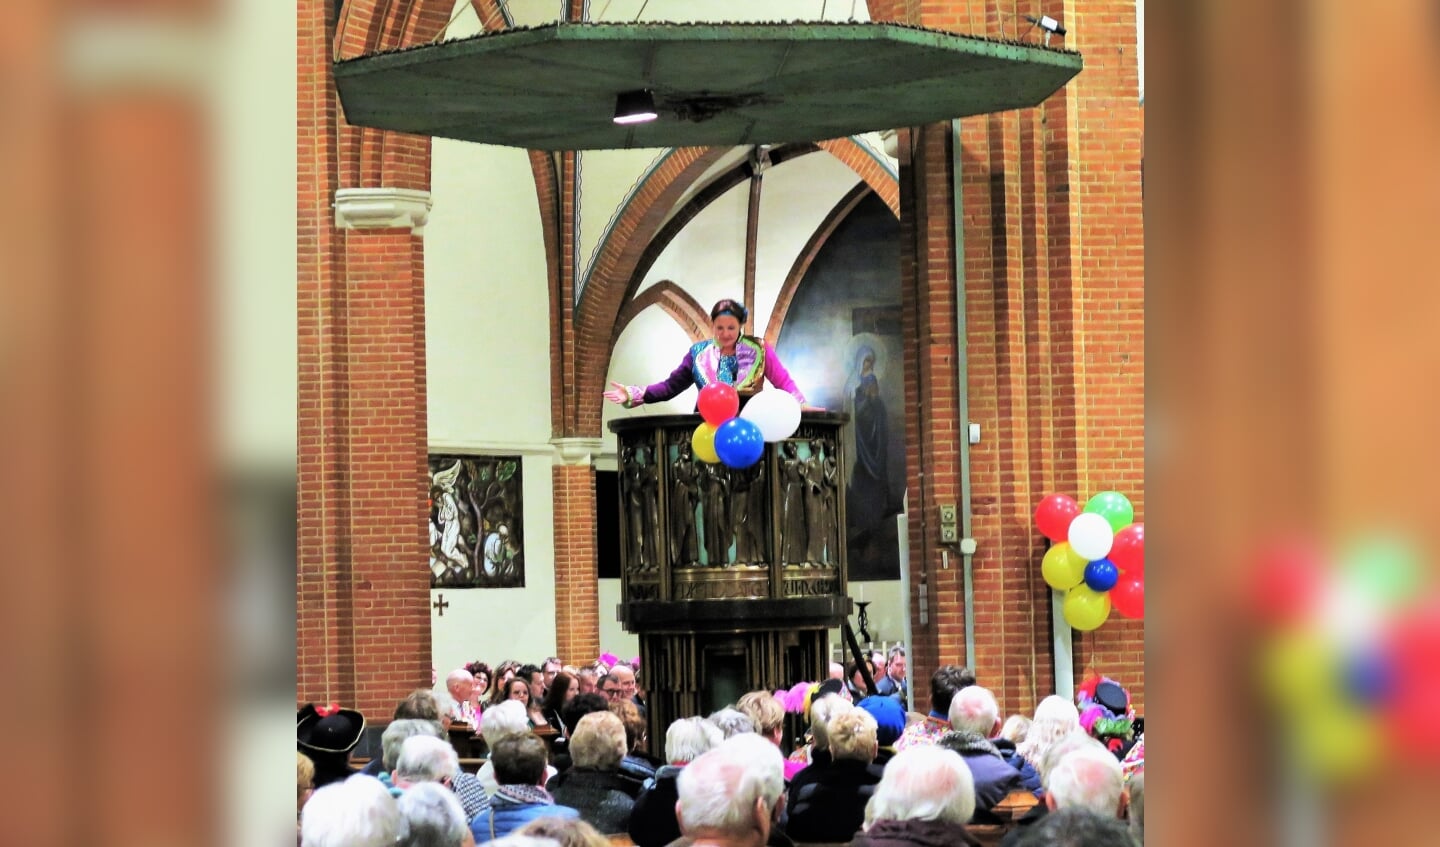 Chiara Monasso uit Groenlo spreekt in 2020 vanaf de preekstoel het kerkvolk toe. Foto: Theo Huijskes